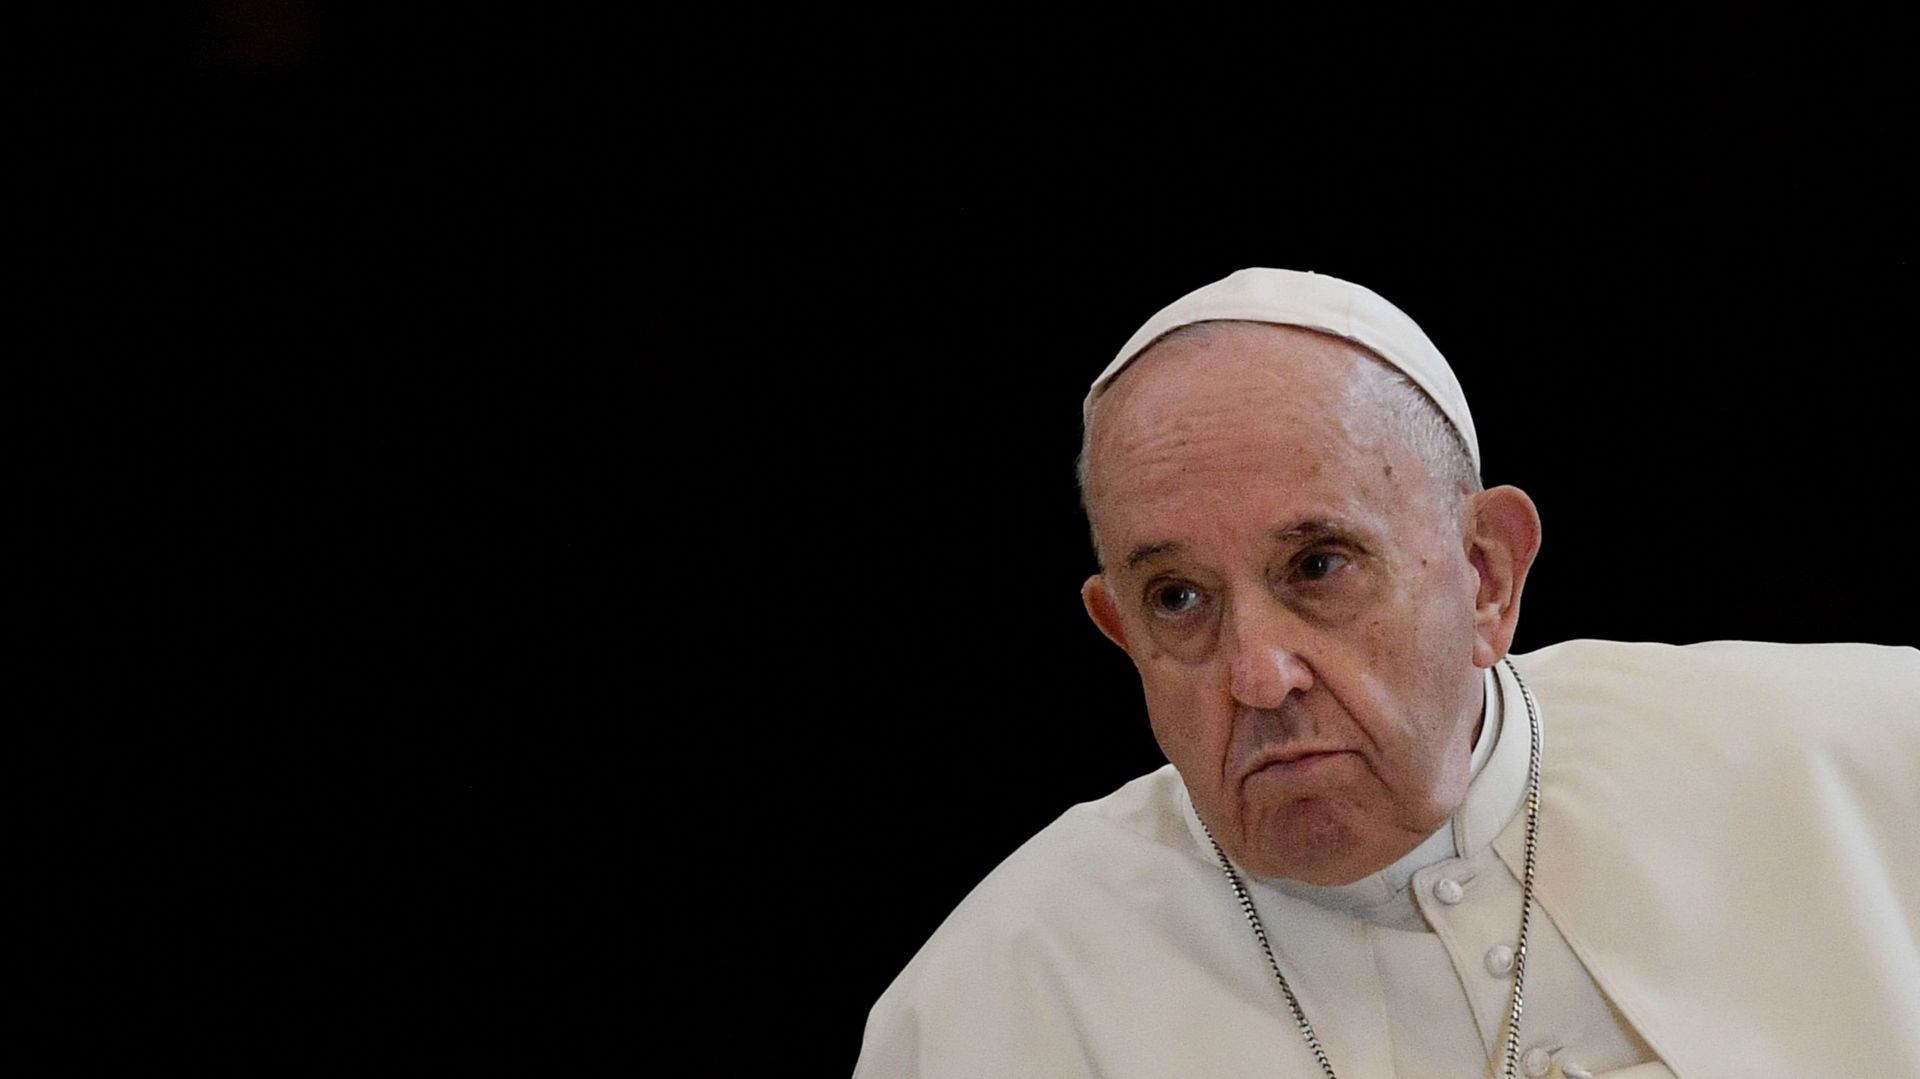 le-pape-francois-remercie-les-journalistes-pour-leur-travail-sur-les-abus-sexuels-dans-l-eglise